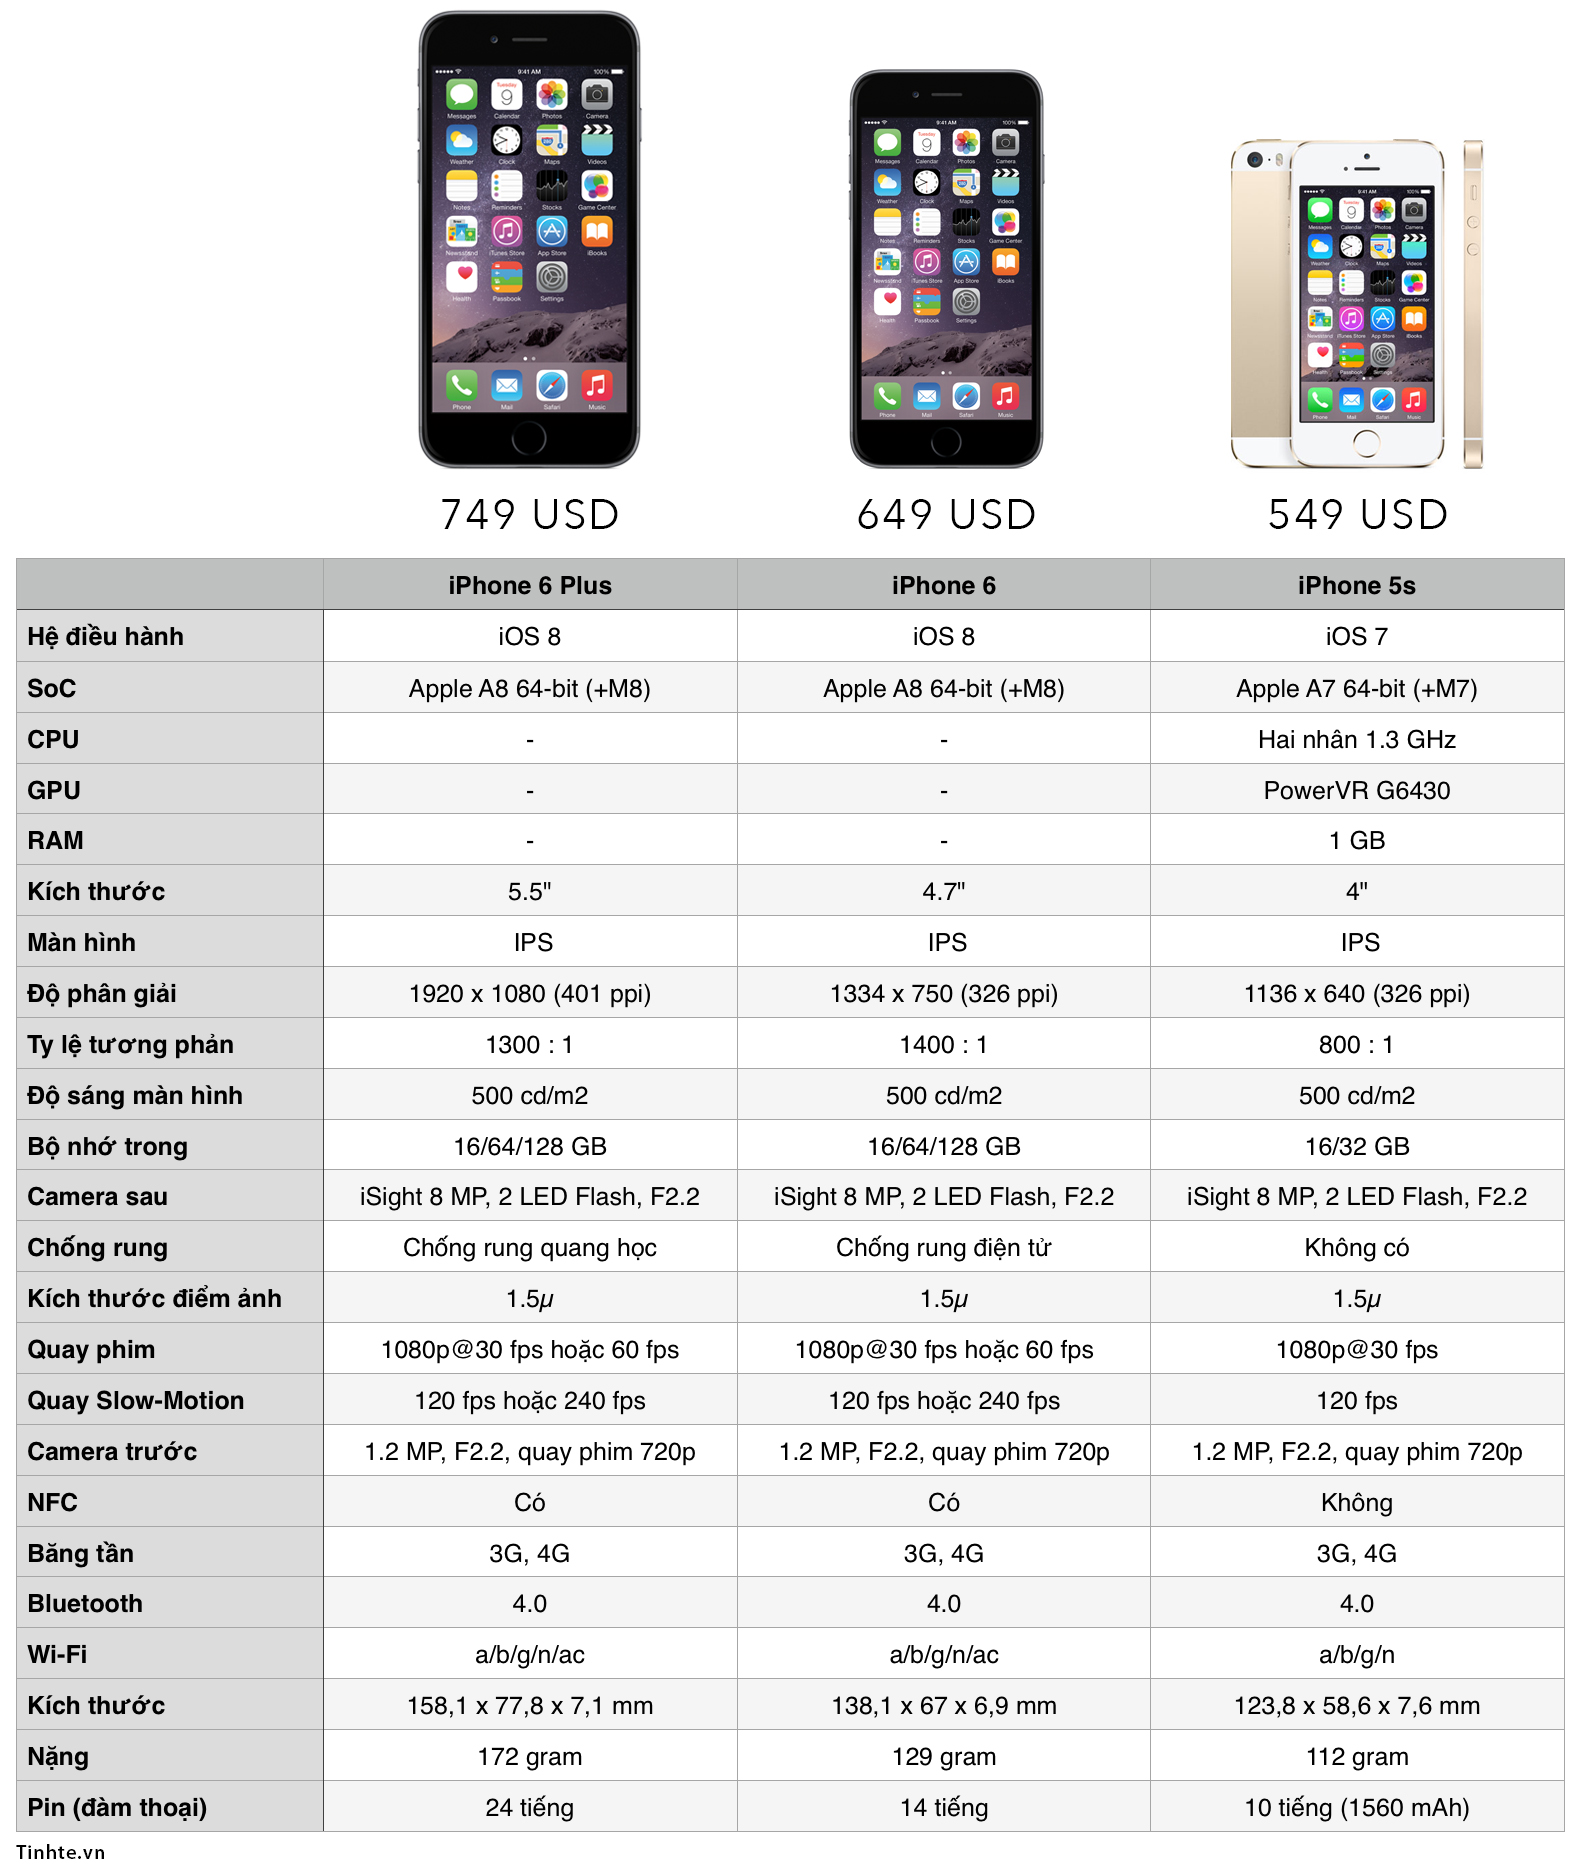 [So sánh cấu hình] iPhone 6 - iPhone 6 Plus - iPhone 5s